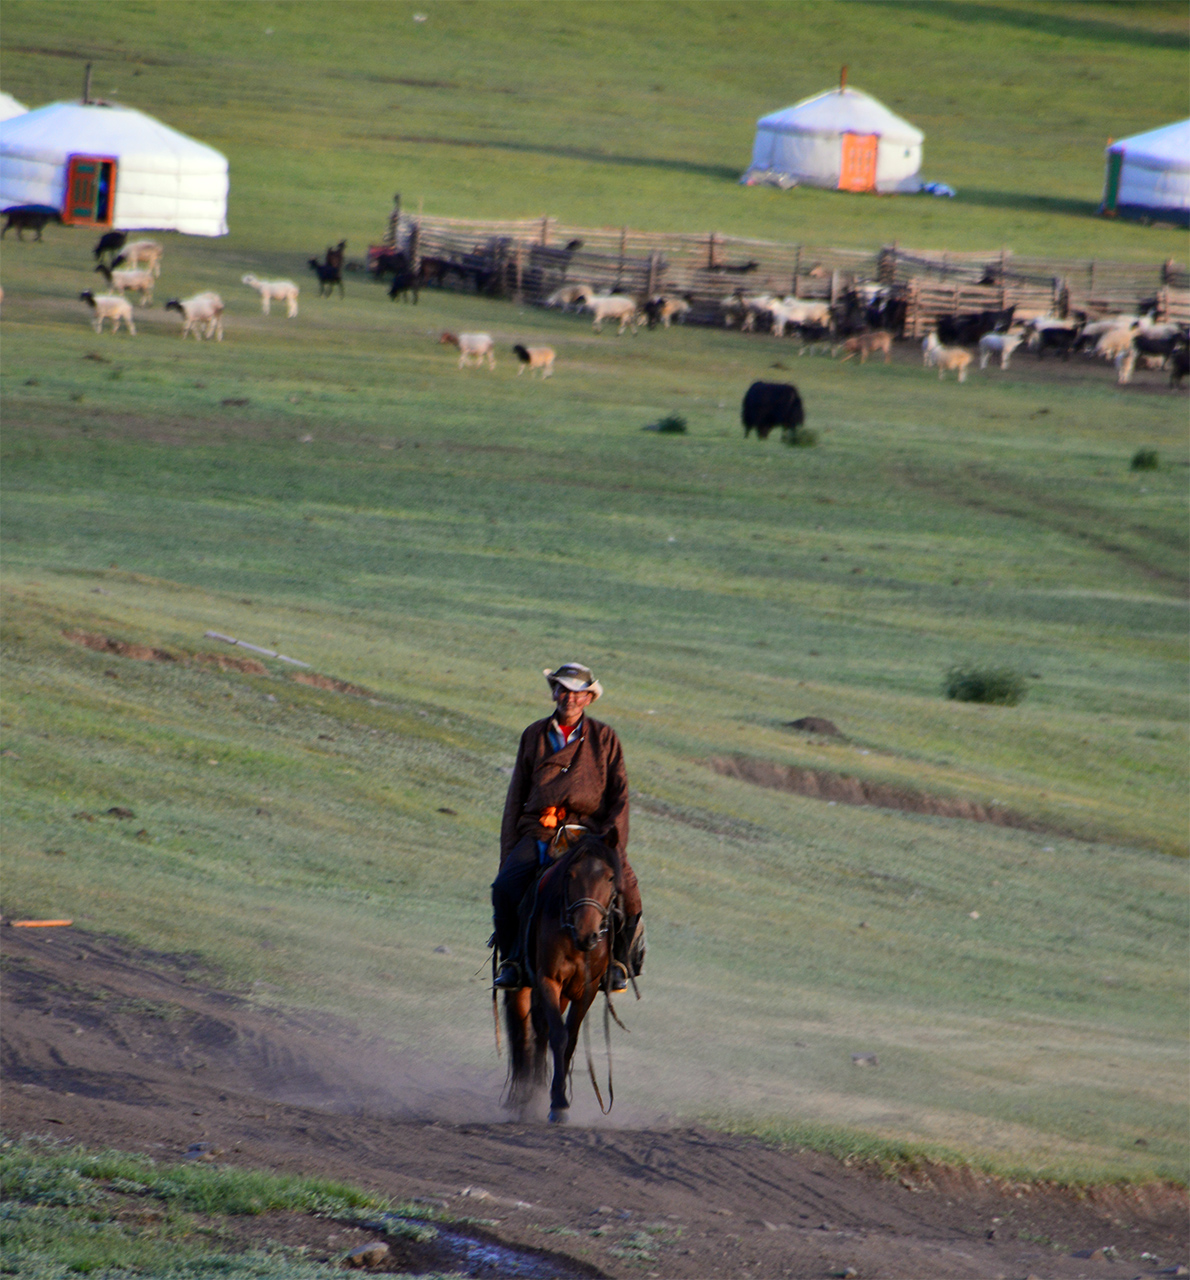 초원의 몽골인. 말을 타고 가축들을 몰던 몽골 아저씨가 반가운 아침 인사를 건넨다.